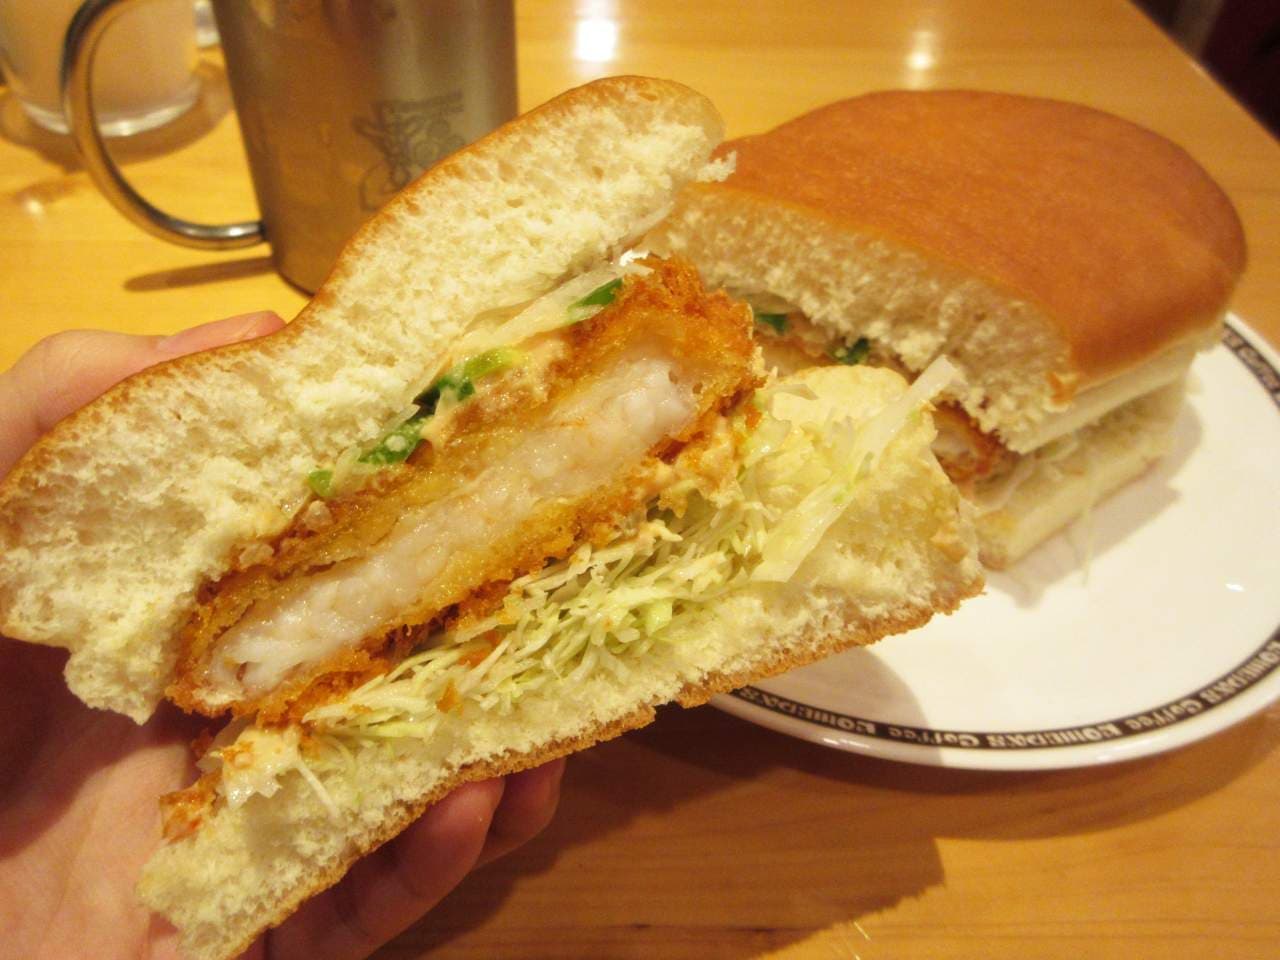 Komeda "Shrimp cutlet bread"